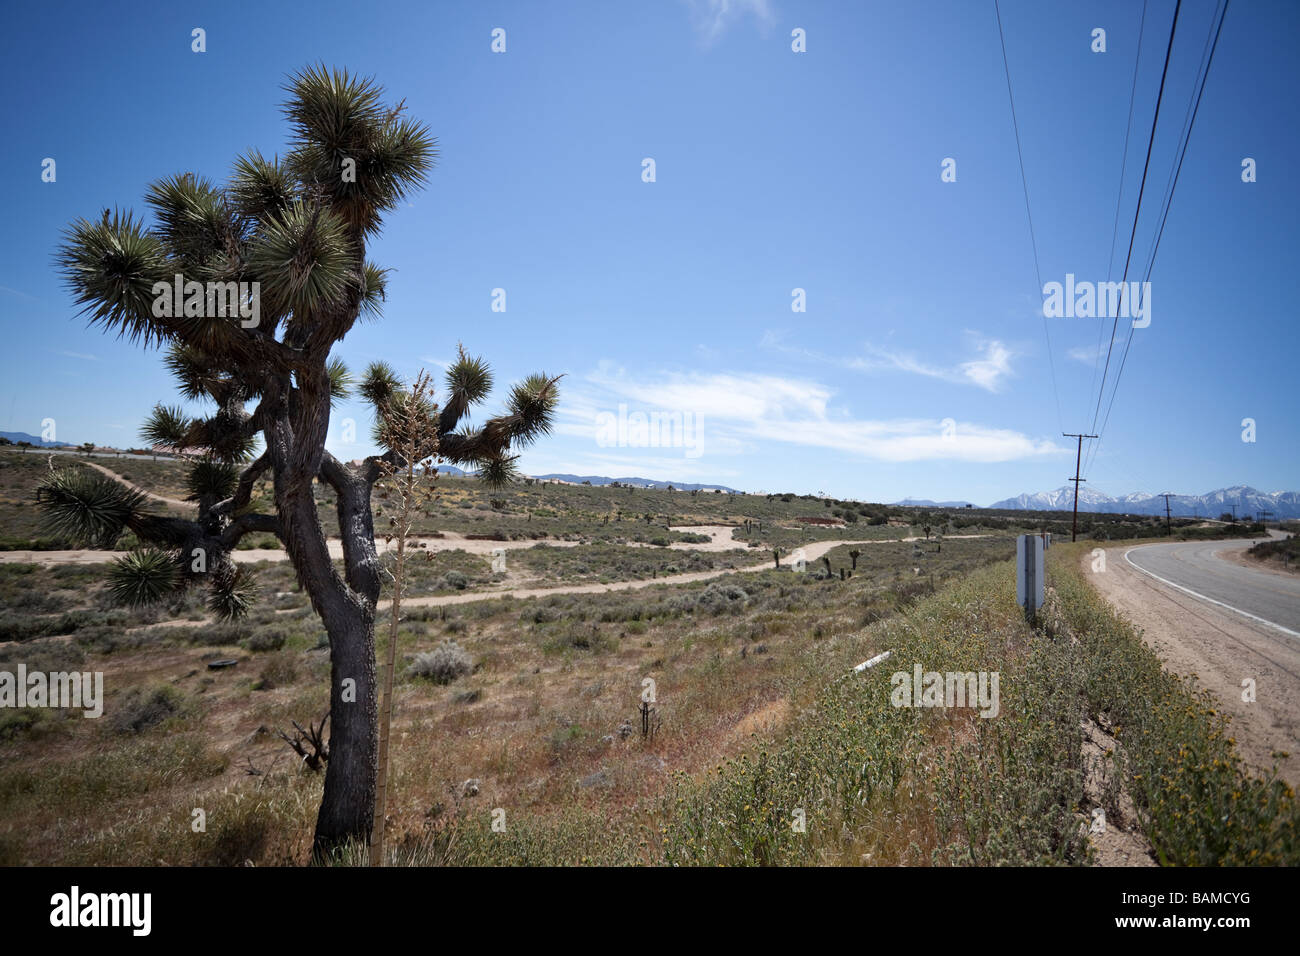 Joshua tree (Yucca brevifolia), Joshua Tree National Park, désert de Mojave, Route 66, le sud de la Californie, USA. Banque D'Images